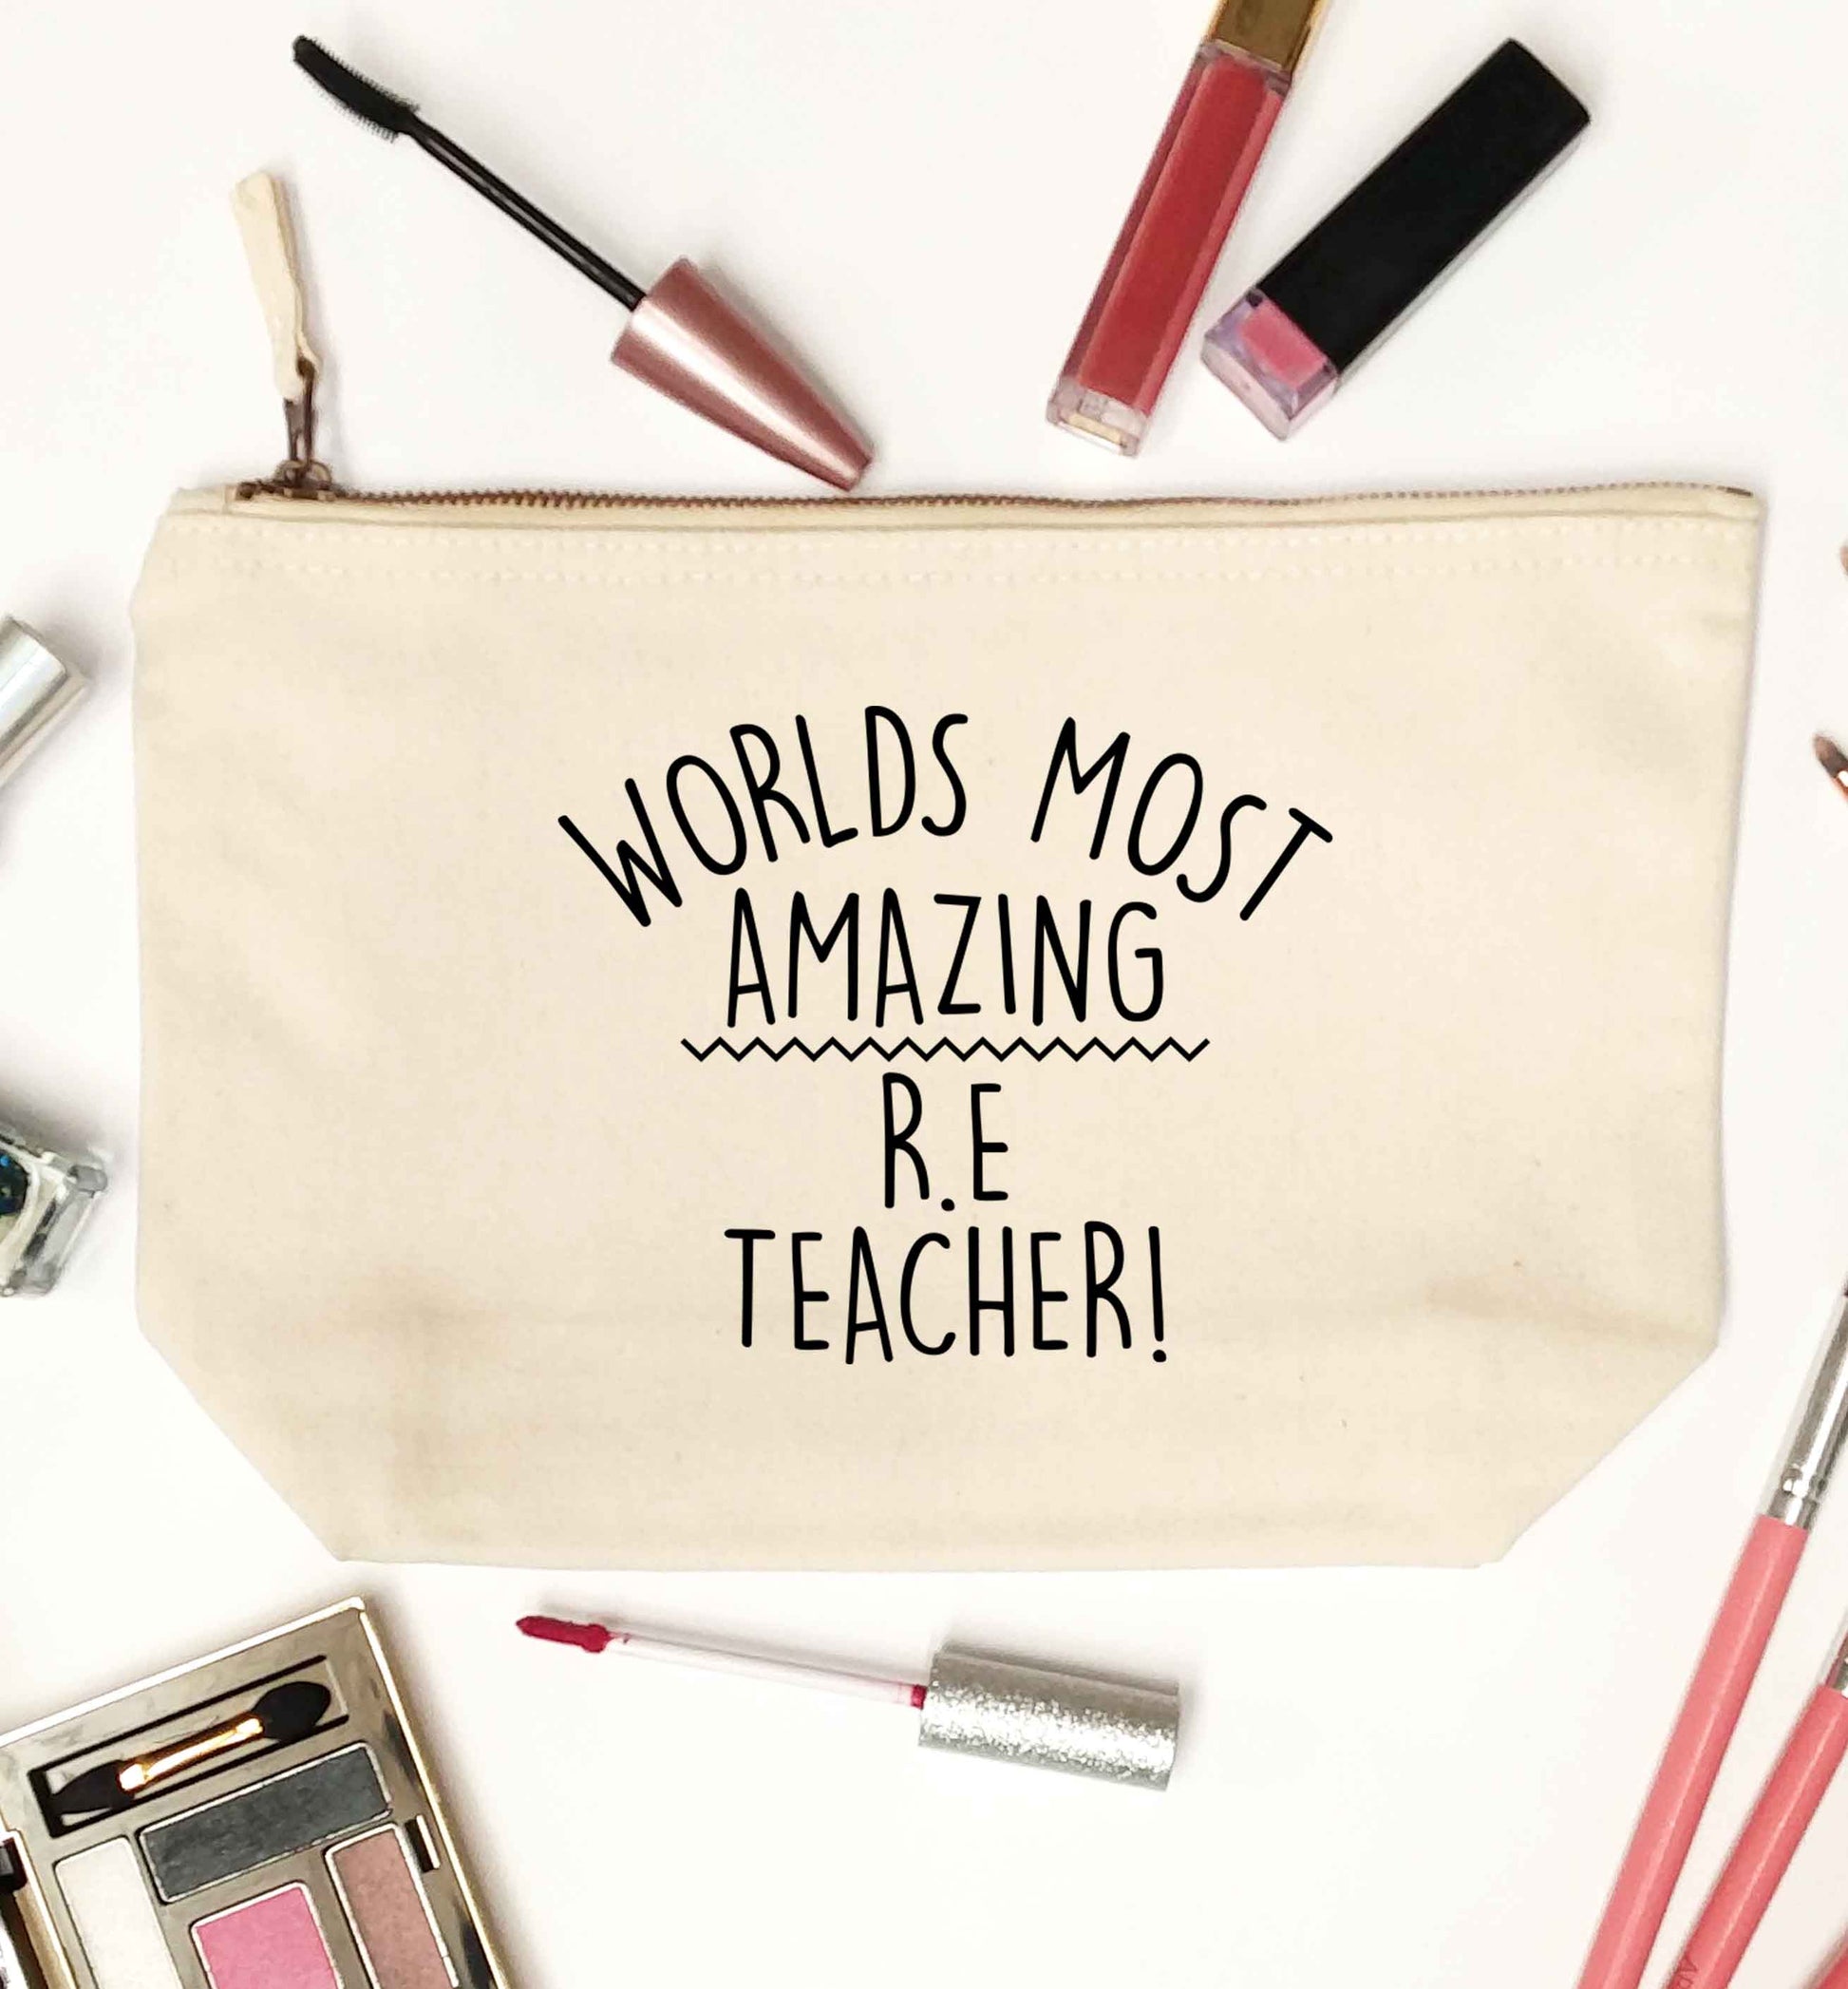 Worlds most amazing R.E teacher natural makeup bag